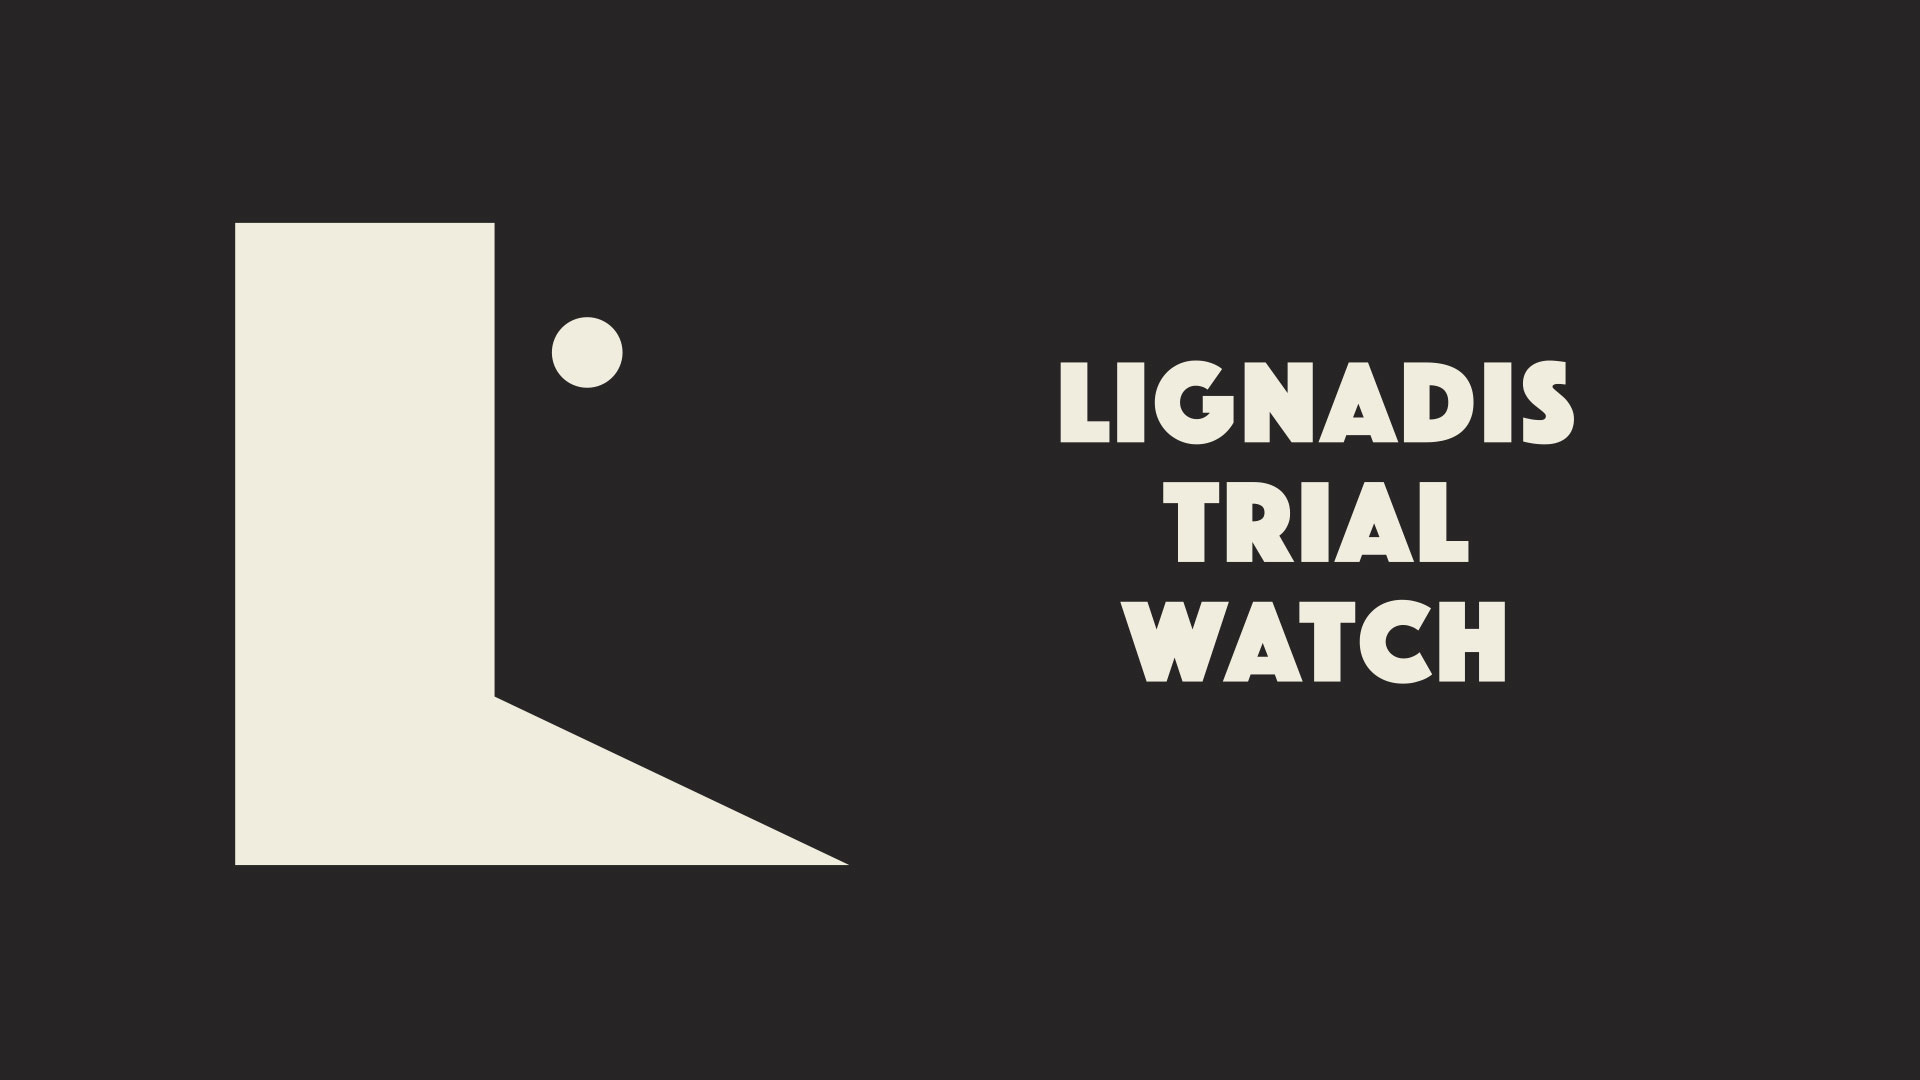 Απορρίφθηκε από το δικαστήριο η παρουσία ανεξάρτητου παρατηρητηρίου στη δίκη Λιγνάδη